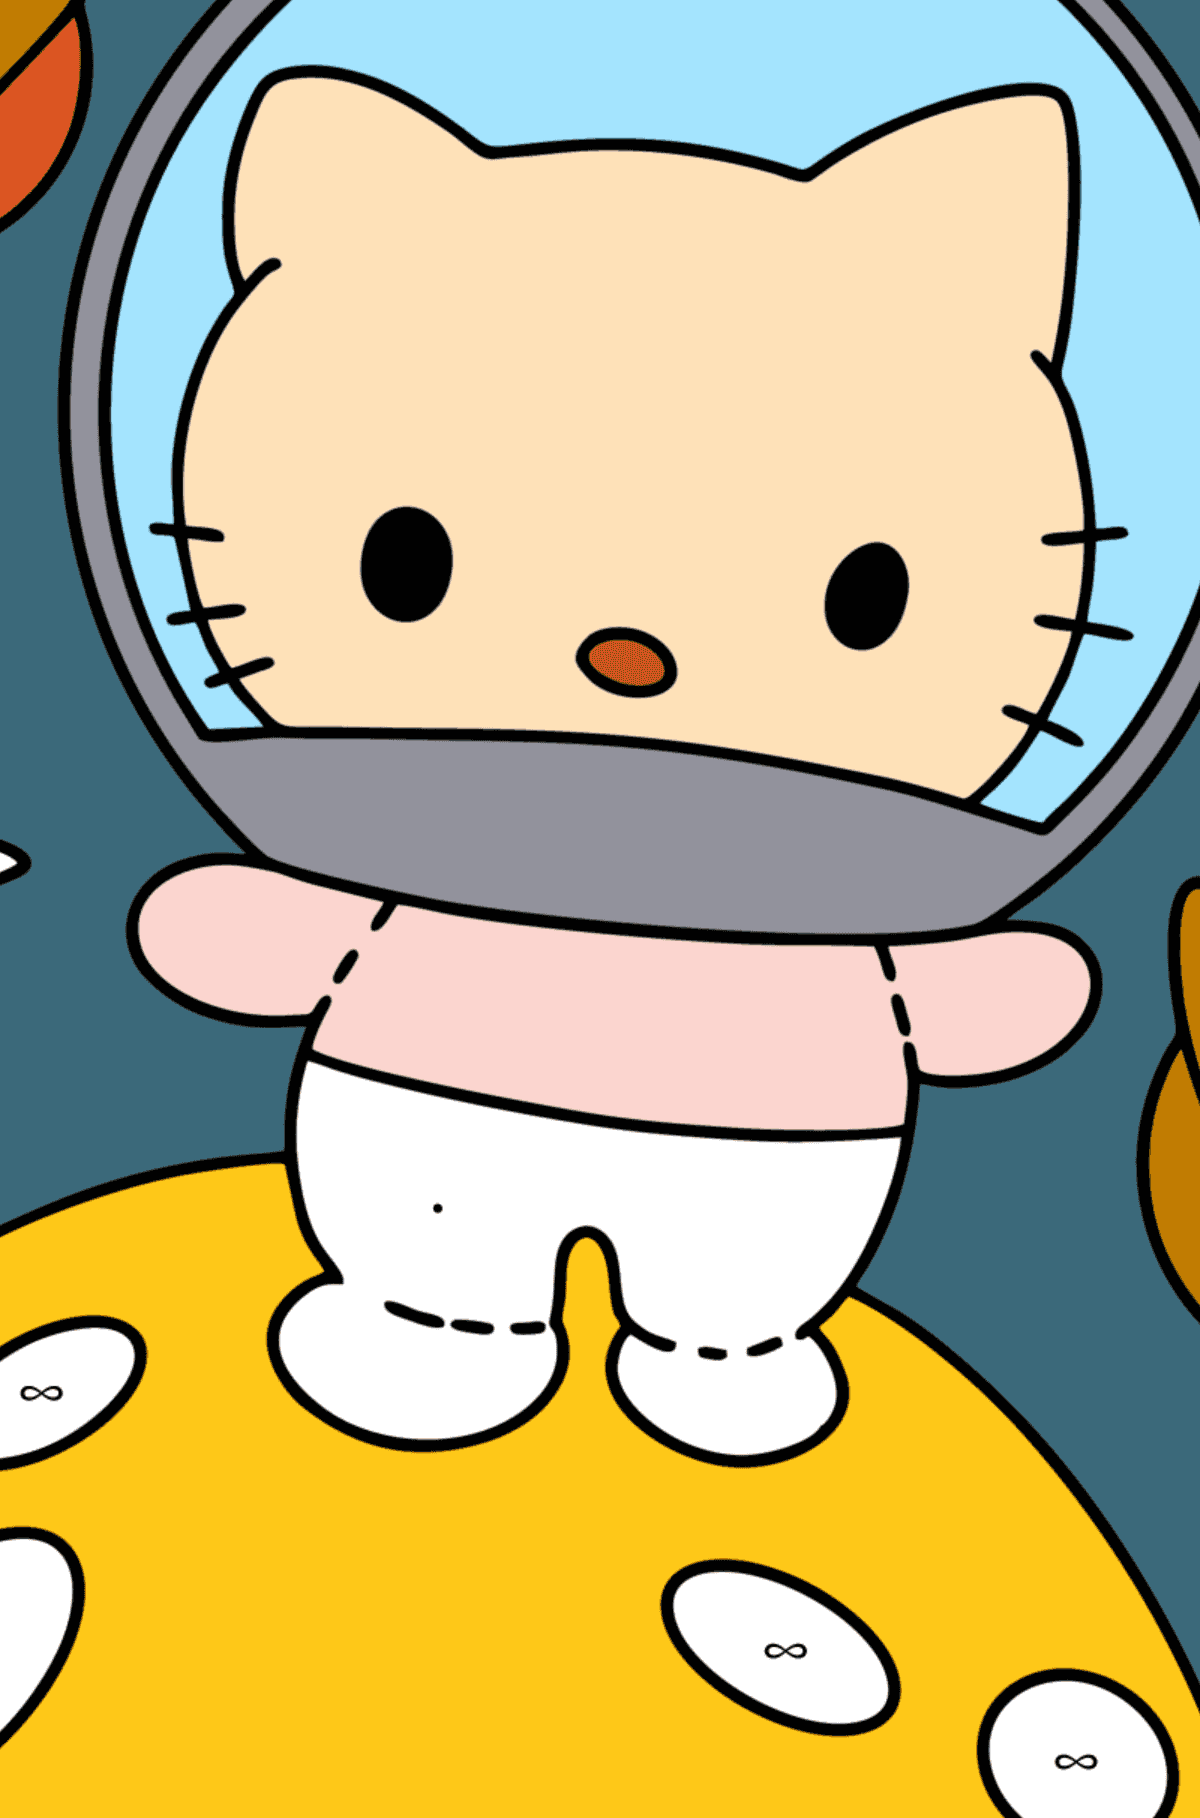 Kolorowanka Hello Kitty Astronaut - Kolorowanie według symboli dla dzieci